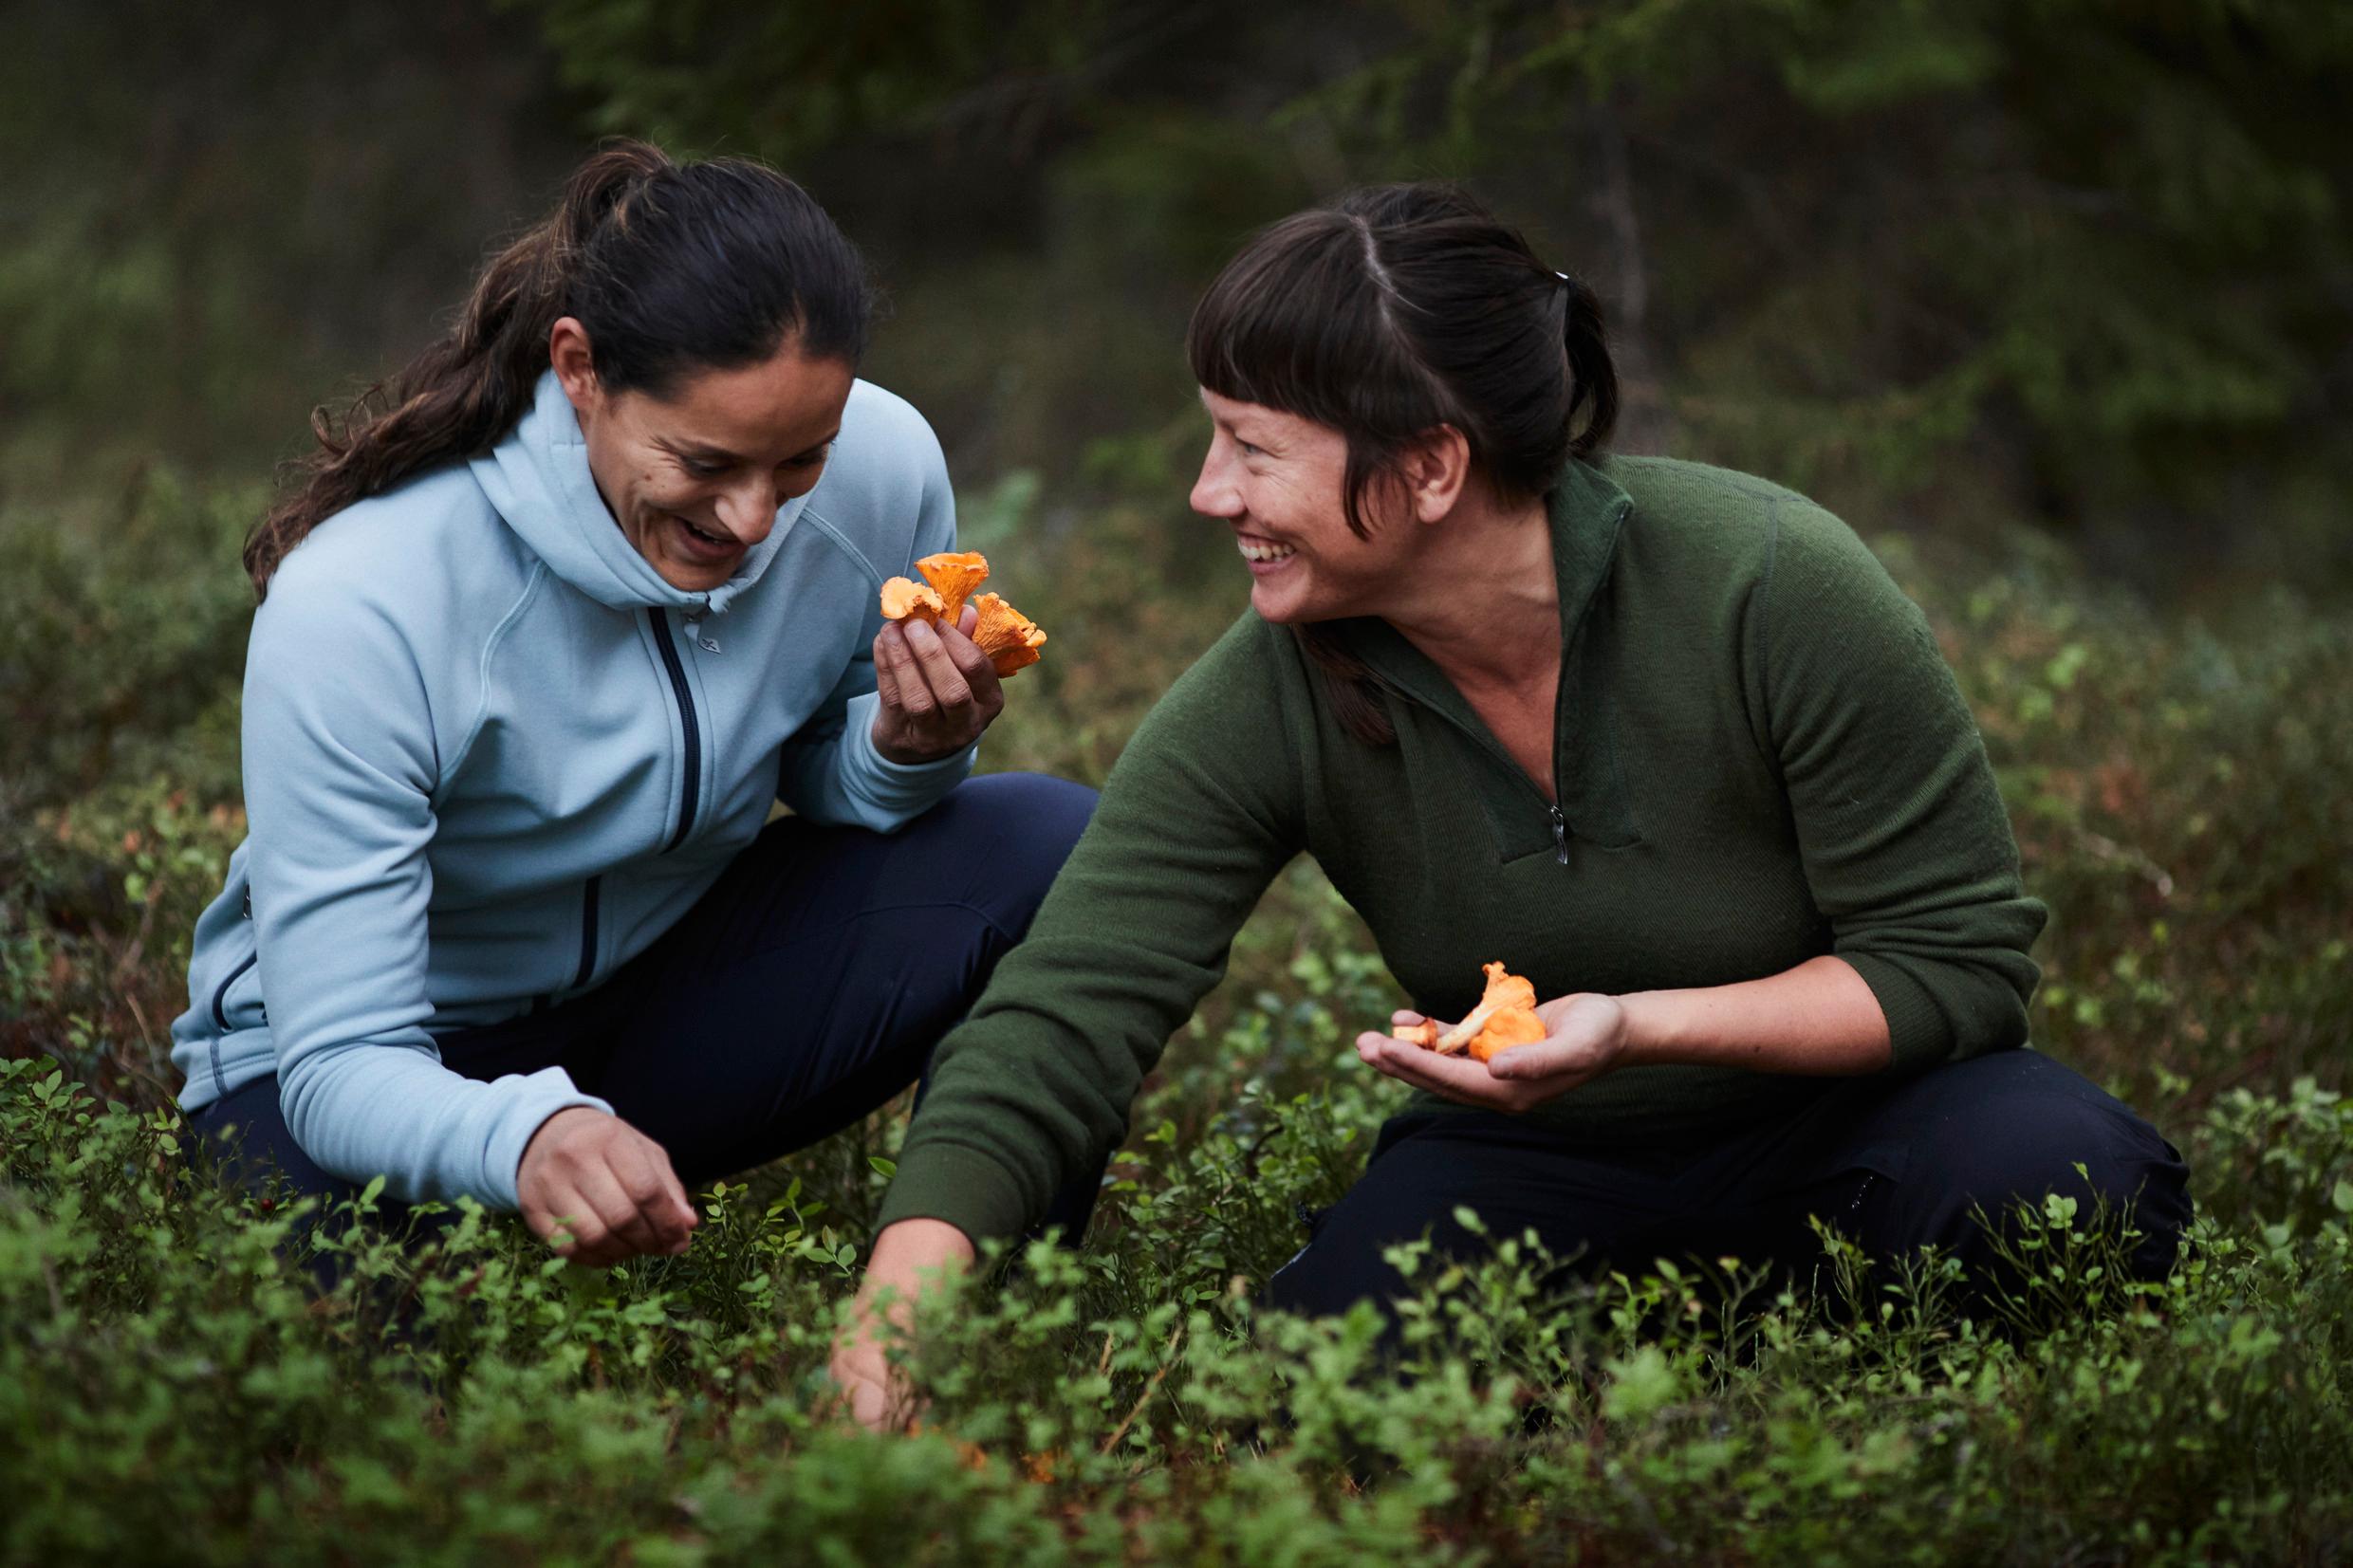 Two women picking mushrooms.